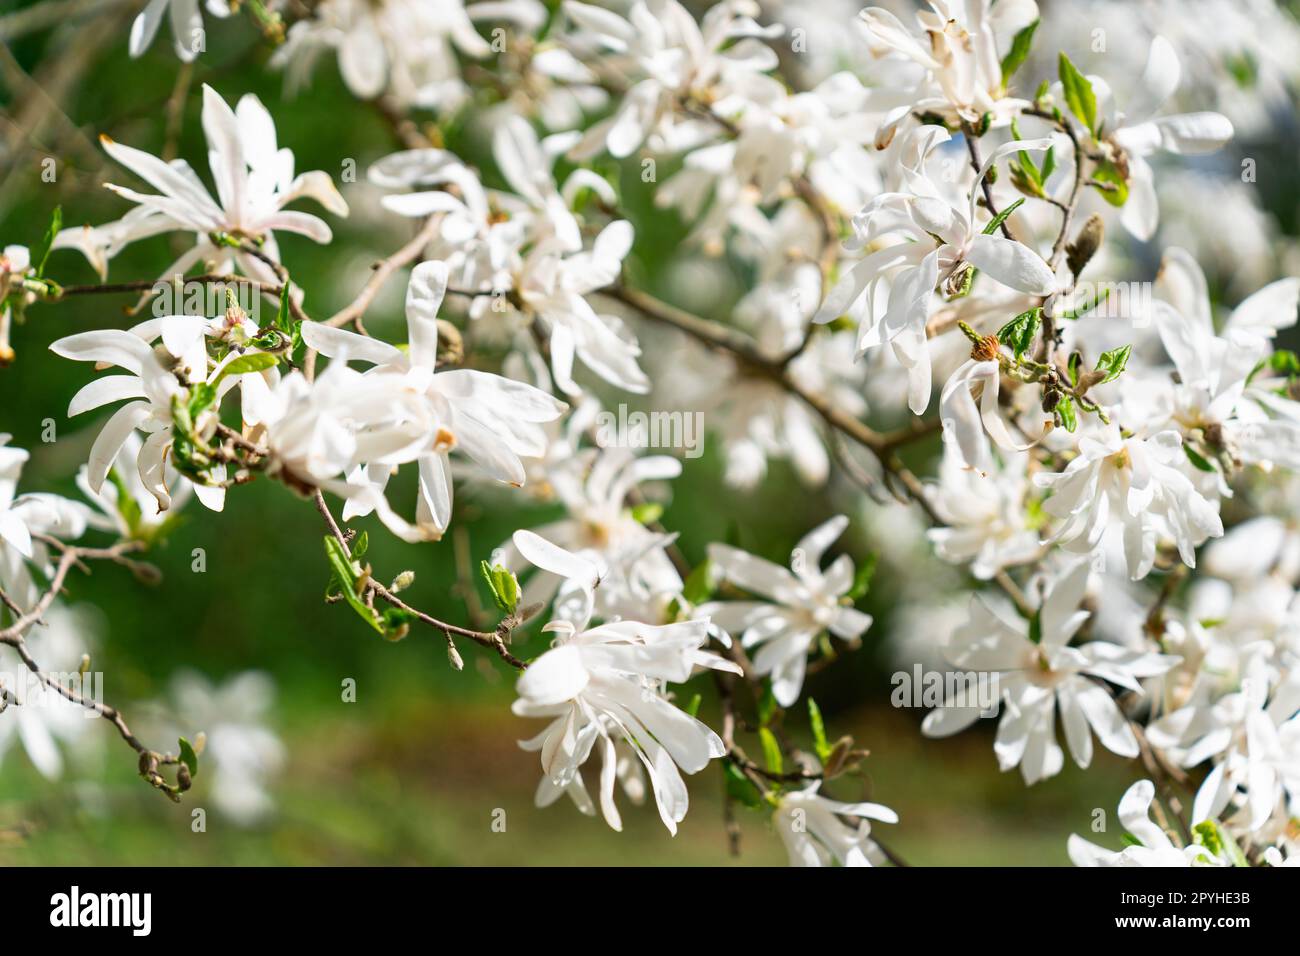 La Magnolia stellata, a volte chiamata la stella magnolia, è un arbusto a crescita lenta o un piccolo albero originario del Giappone. Porta grandi fiori bianchi o rosa appariscenti all'inizio della primavera, prima che le foglie si aprano. Foto Stock